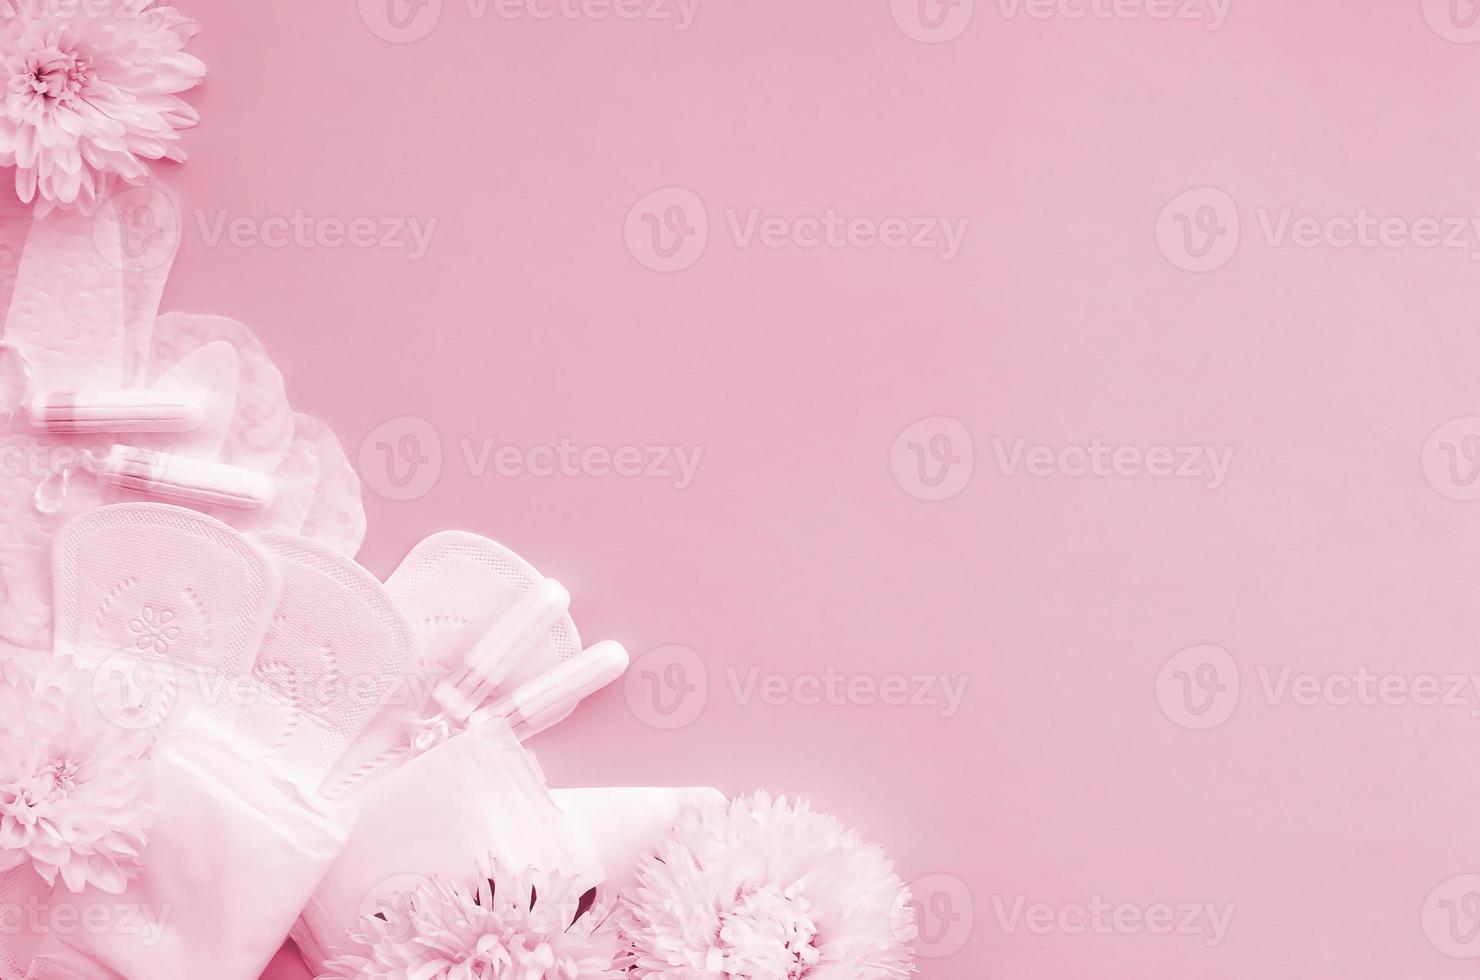 compresas menstruales y tampones con tiernas flores blancas sobre una imagen de fondo lila pastel tonificada en viva magenta, color del año 2023 foto